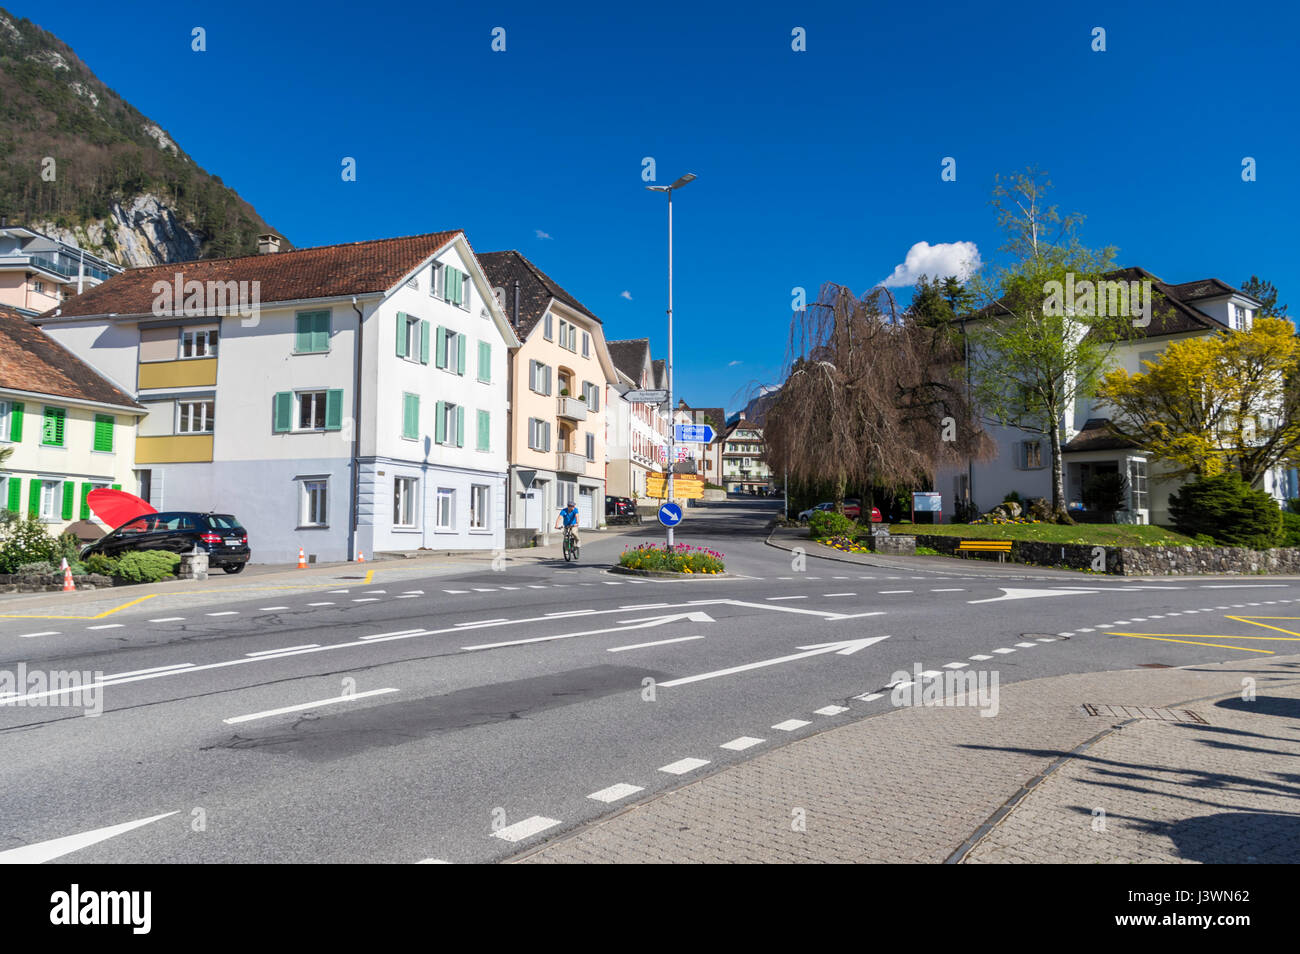 Voir des bâtiments et une intersection dans le centre d'Einsiedeln, un village dans le canton de Schwyz, Suisse. Banque D'Images